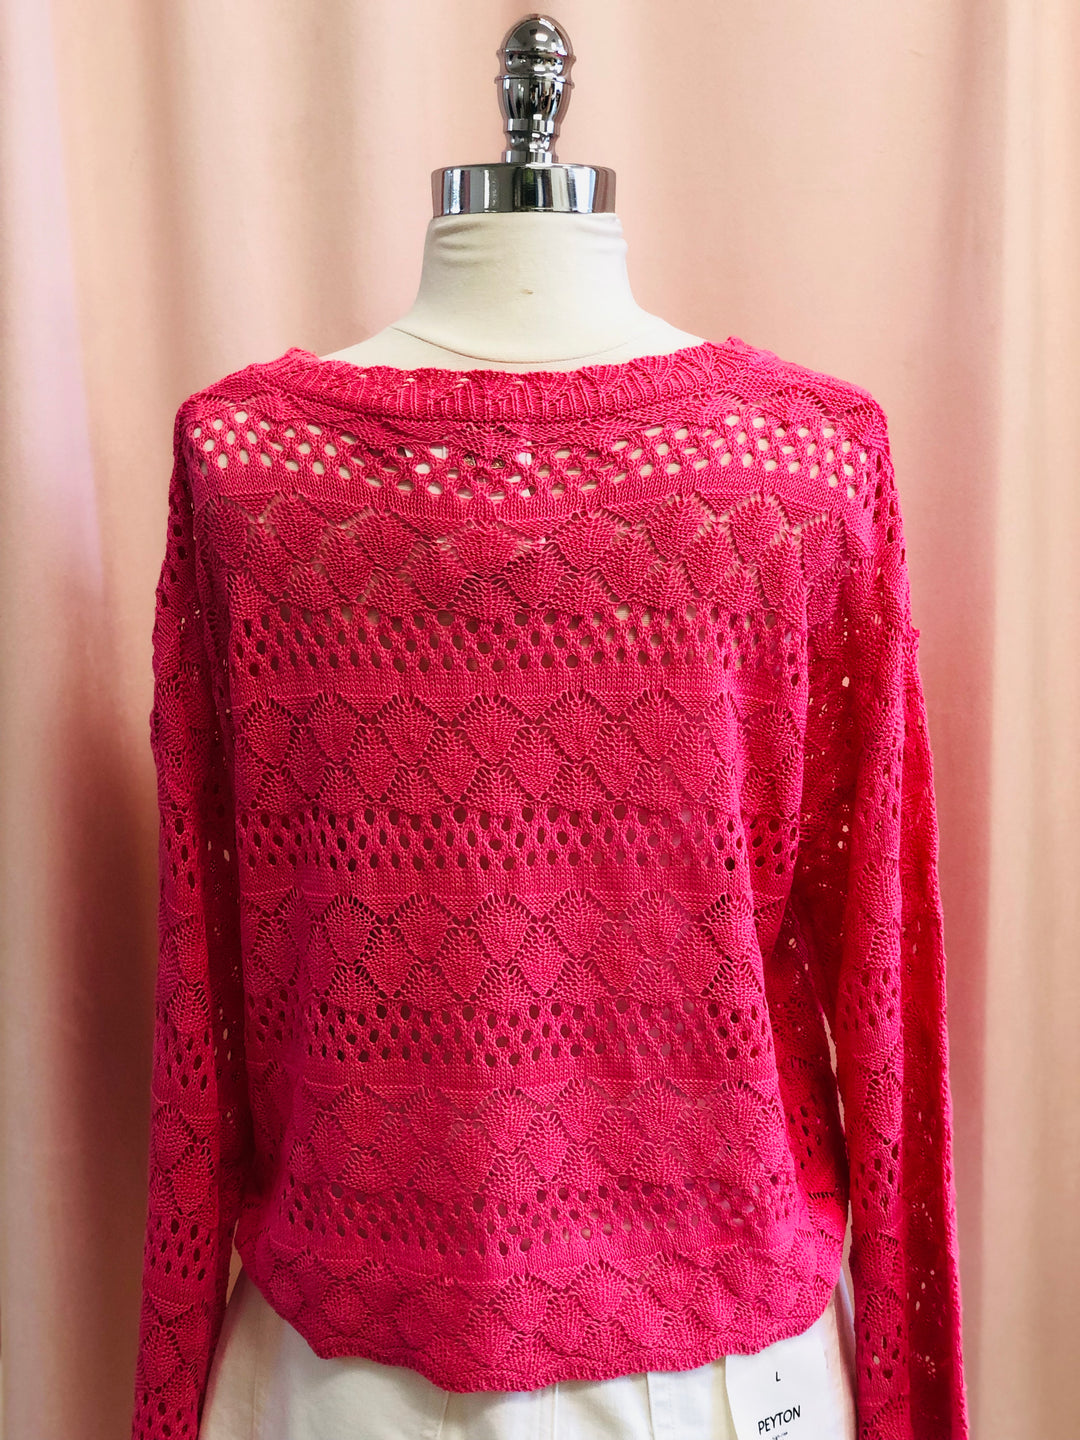 Laurel Crocheted Top Pink